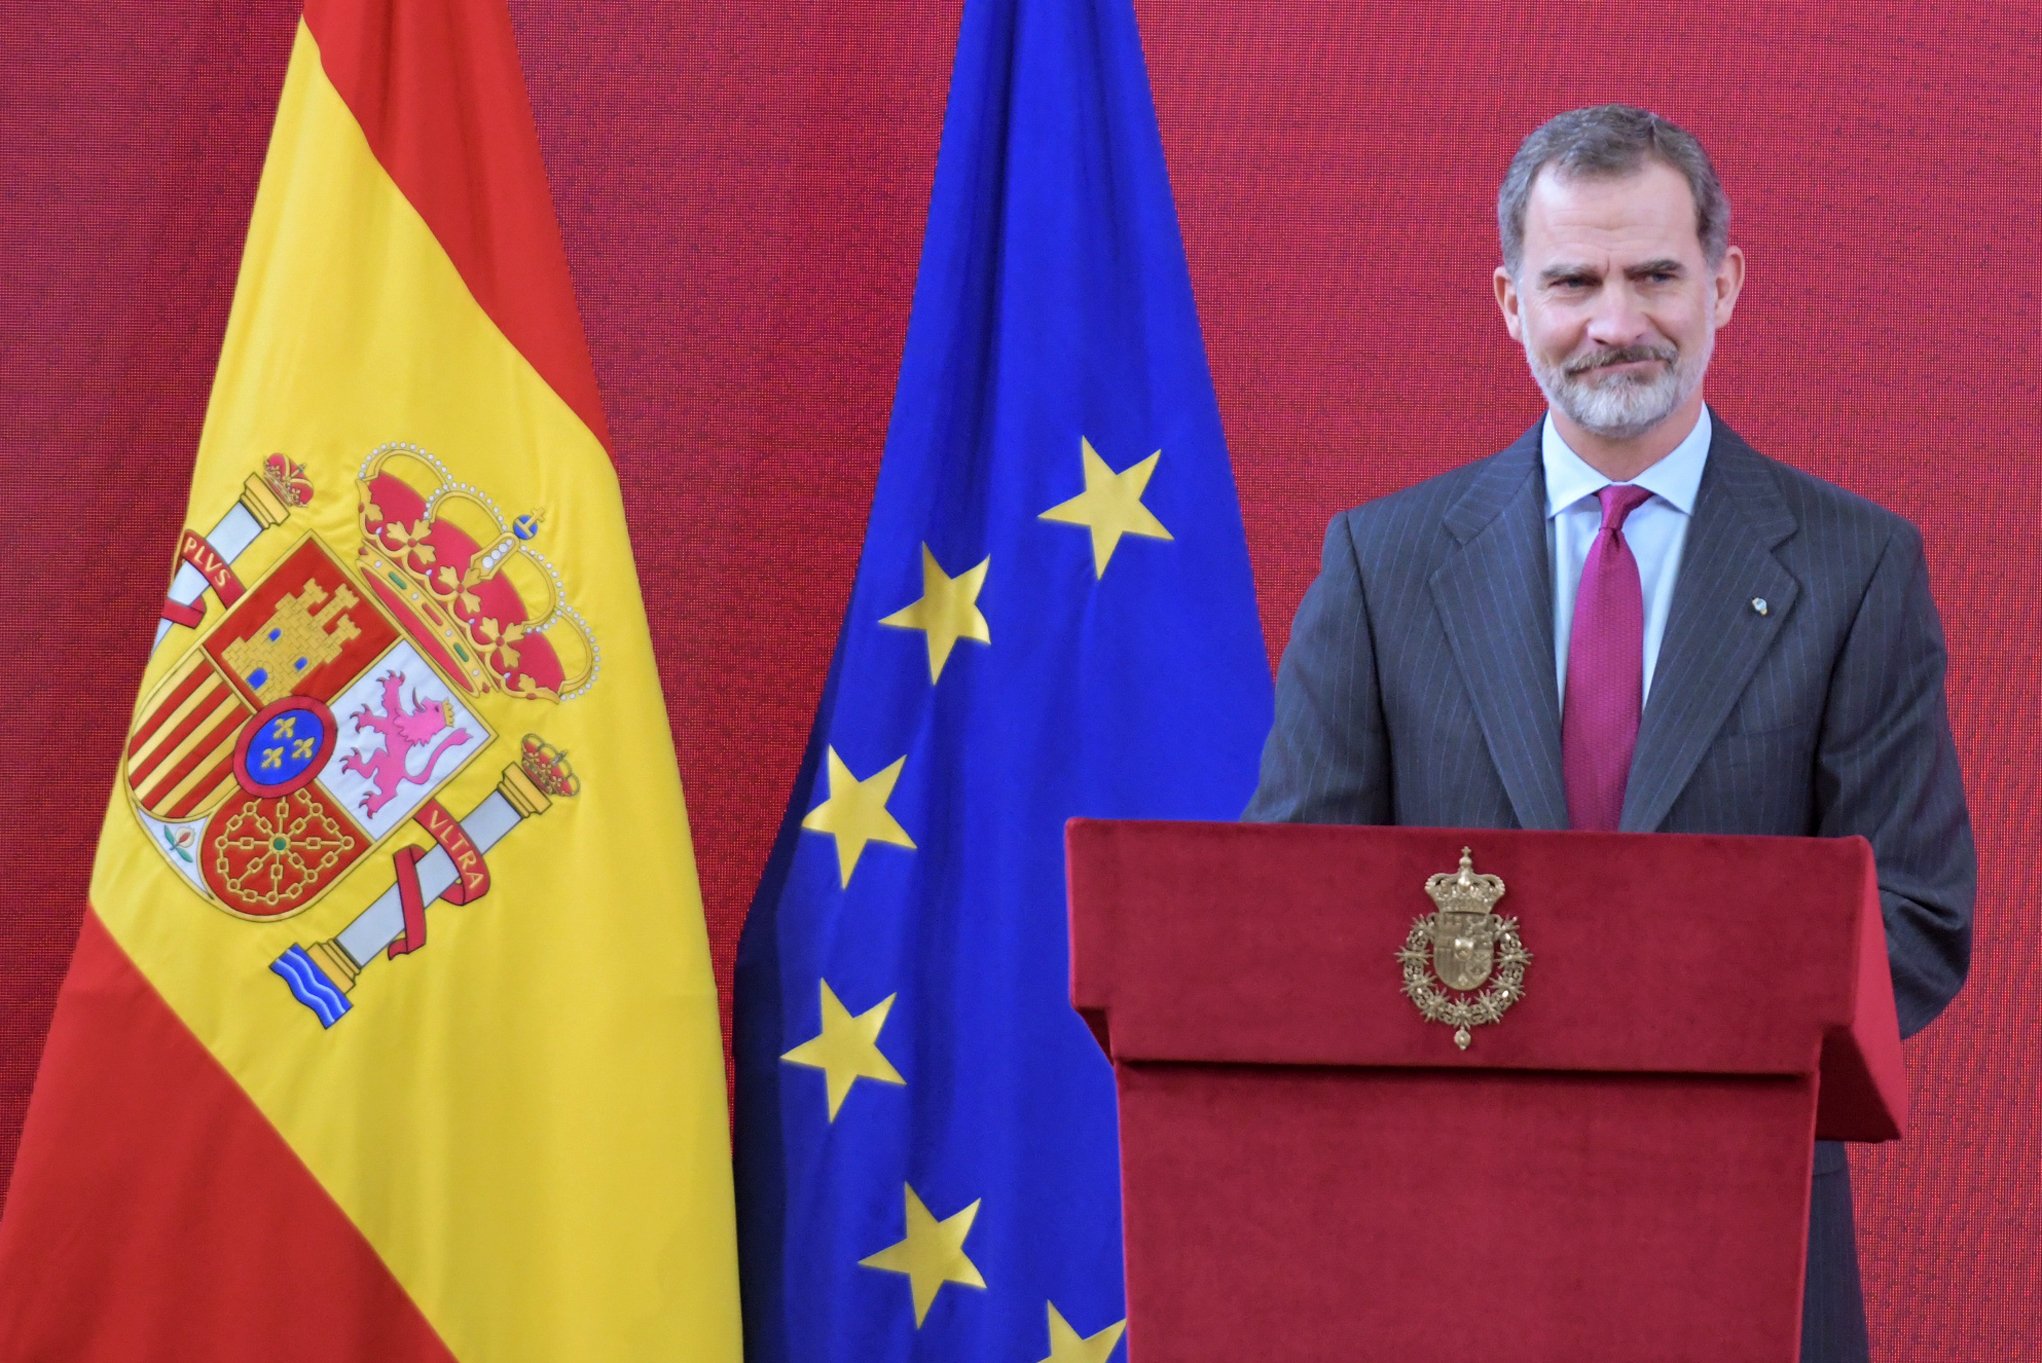 El coronavirus obliga a cancelar dos actos de los Reyes en Madrid y Logroño